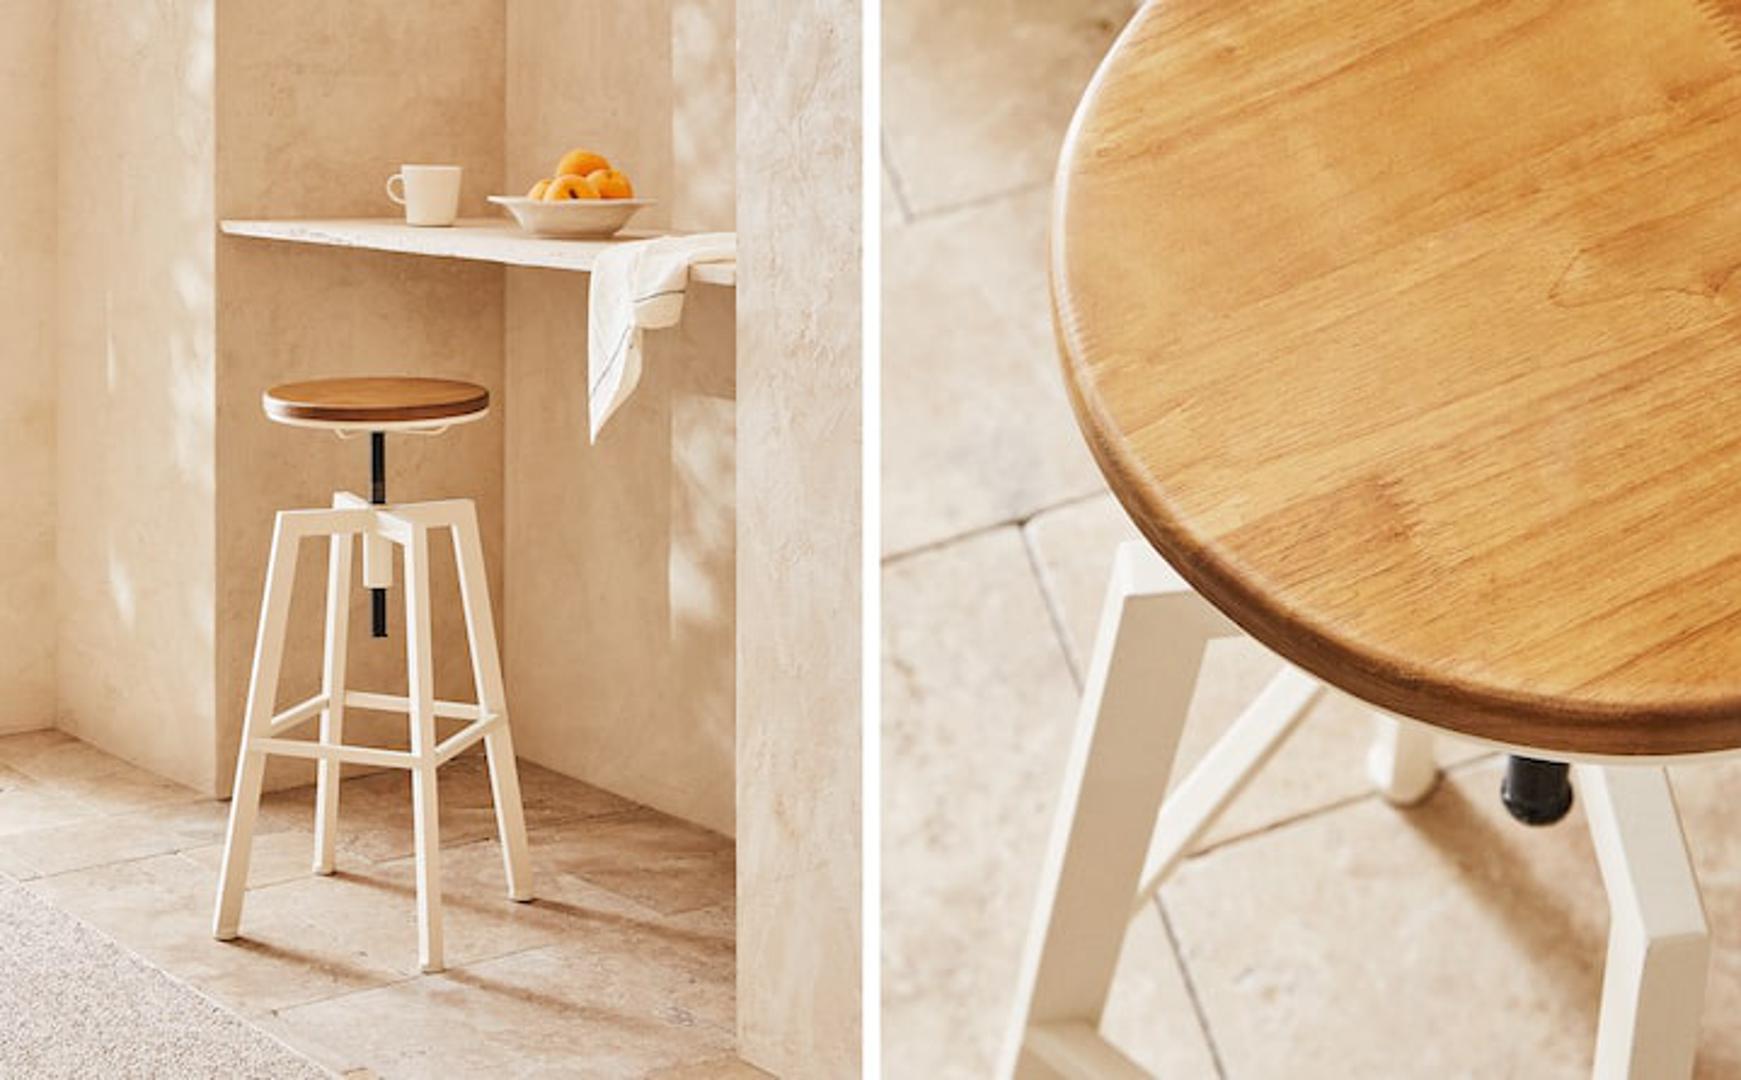 Drvani barski stolac koji se okreće odličan je izbor za manje prostore (759 kn)